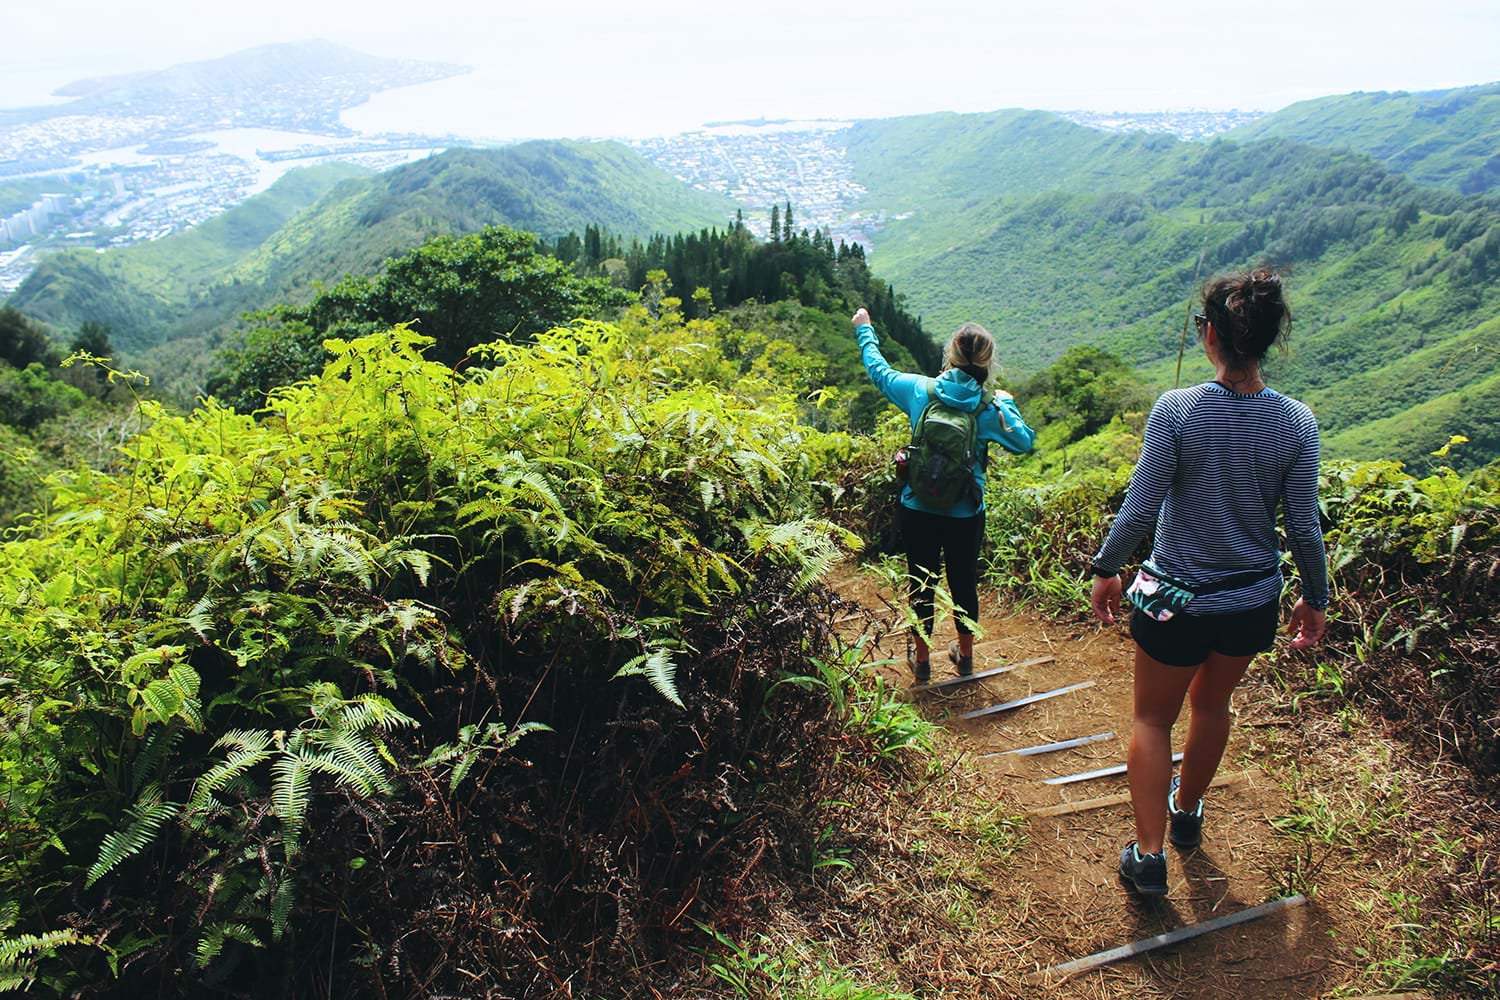 Two women hiking down mountain path